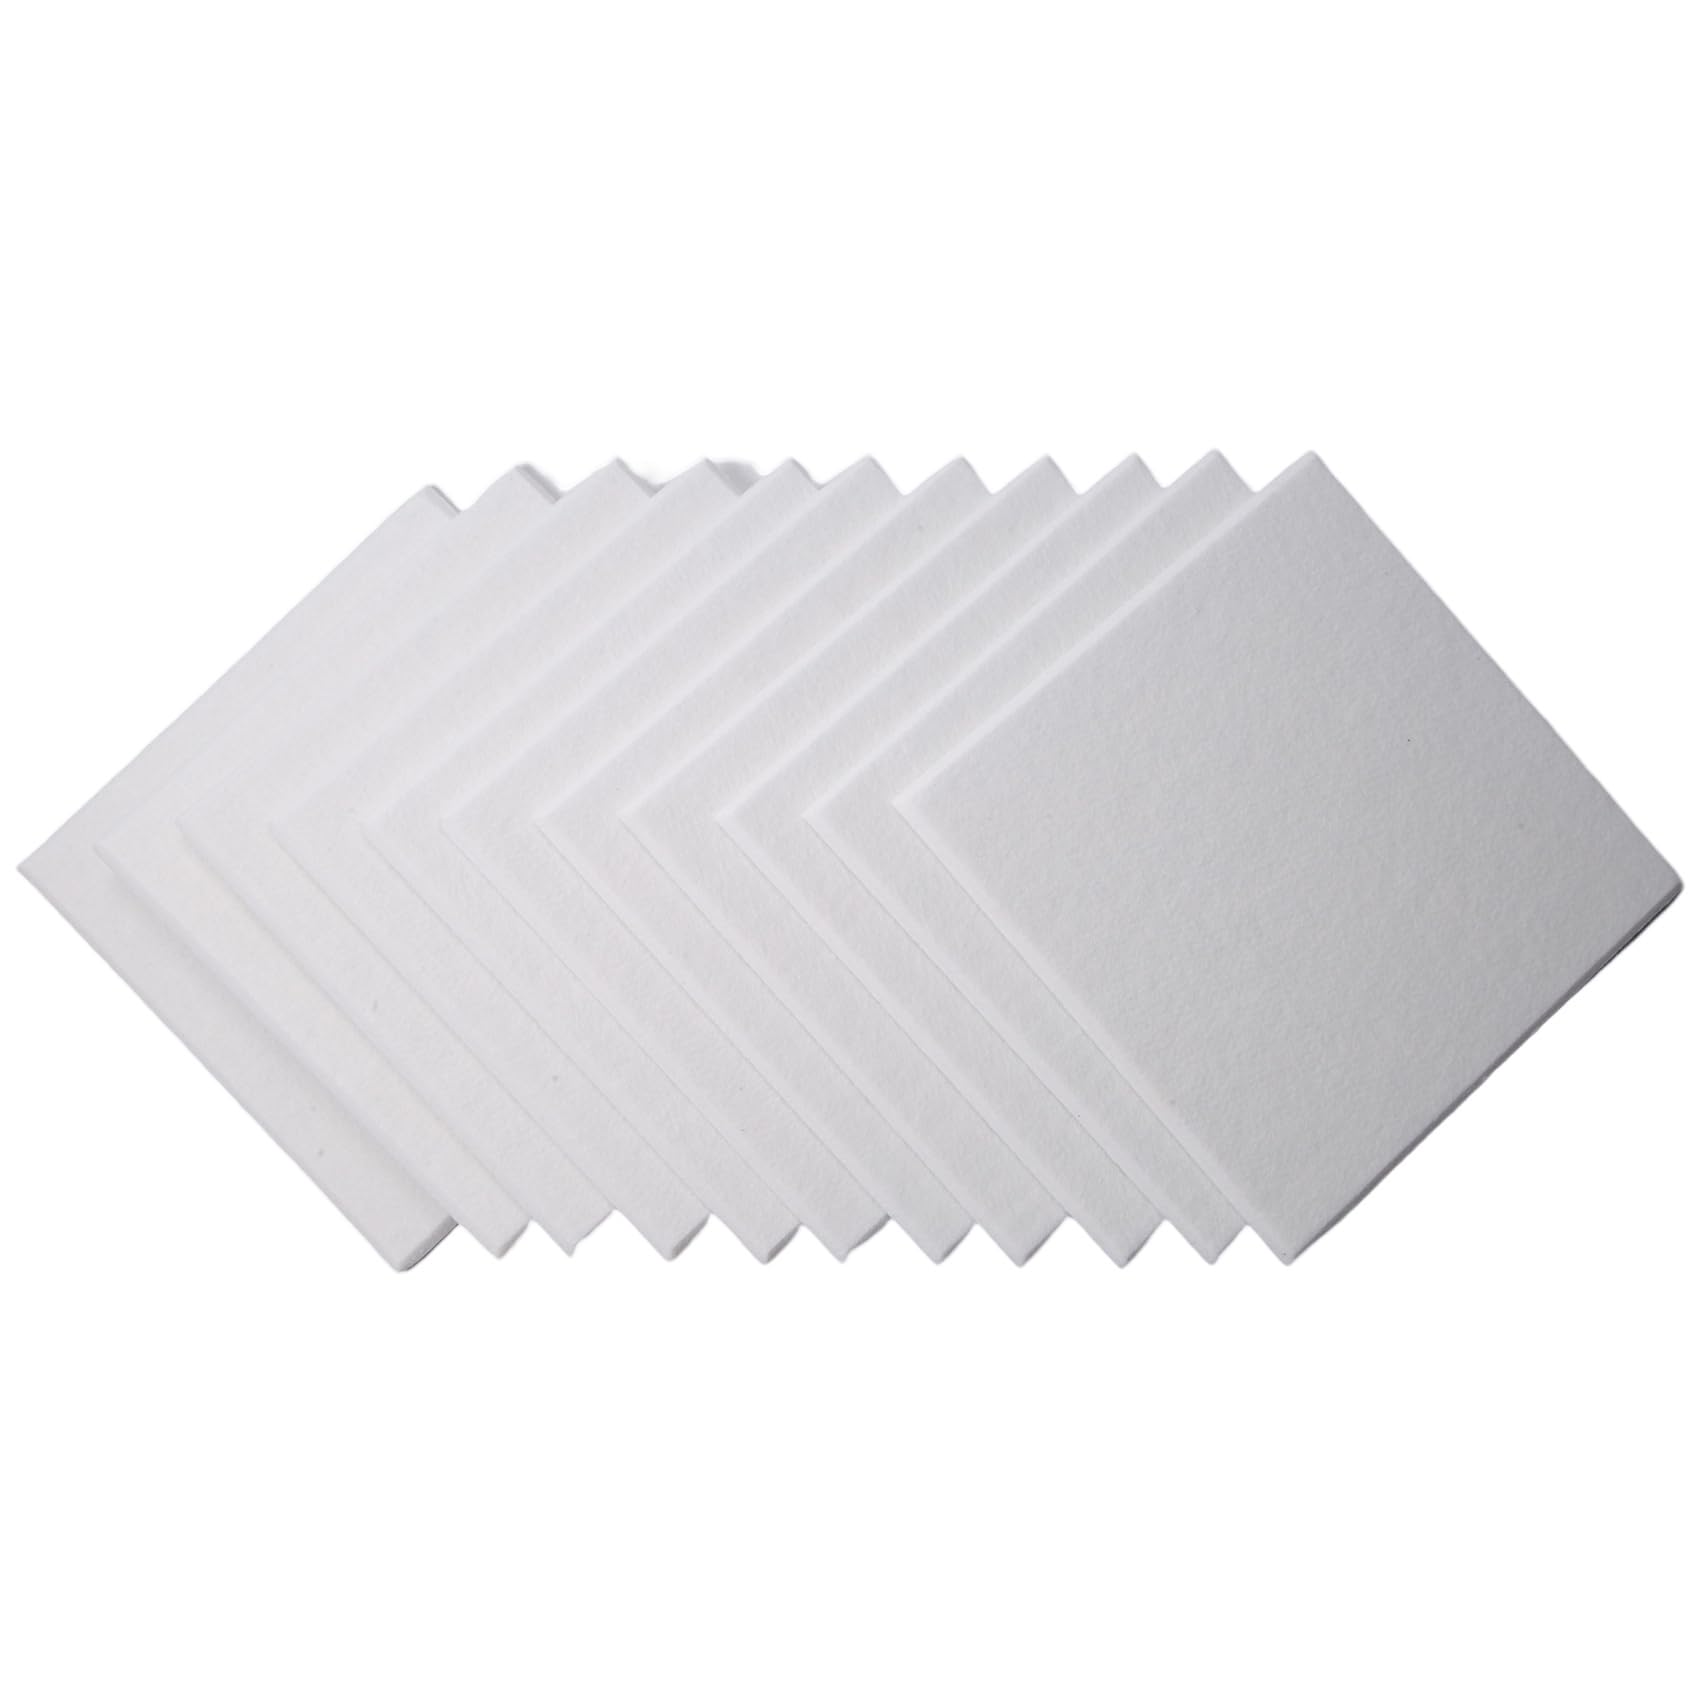 Jikoiuty Akustik Platten Weiß 12 Stück Abgeschrägte mit Hoher Dichte für Wand Dekoration und Akustik Behandlung